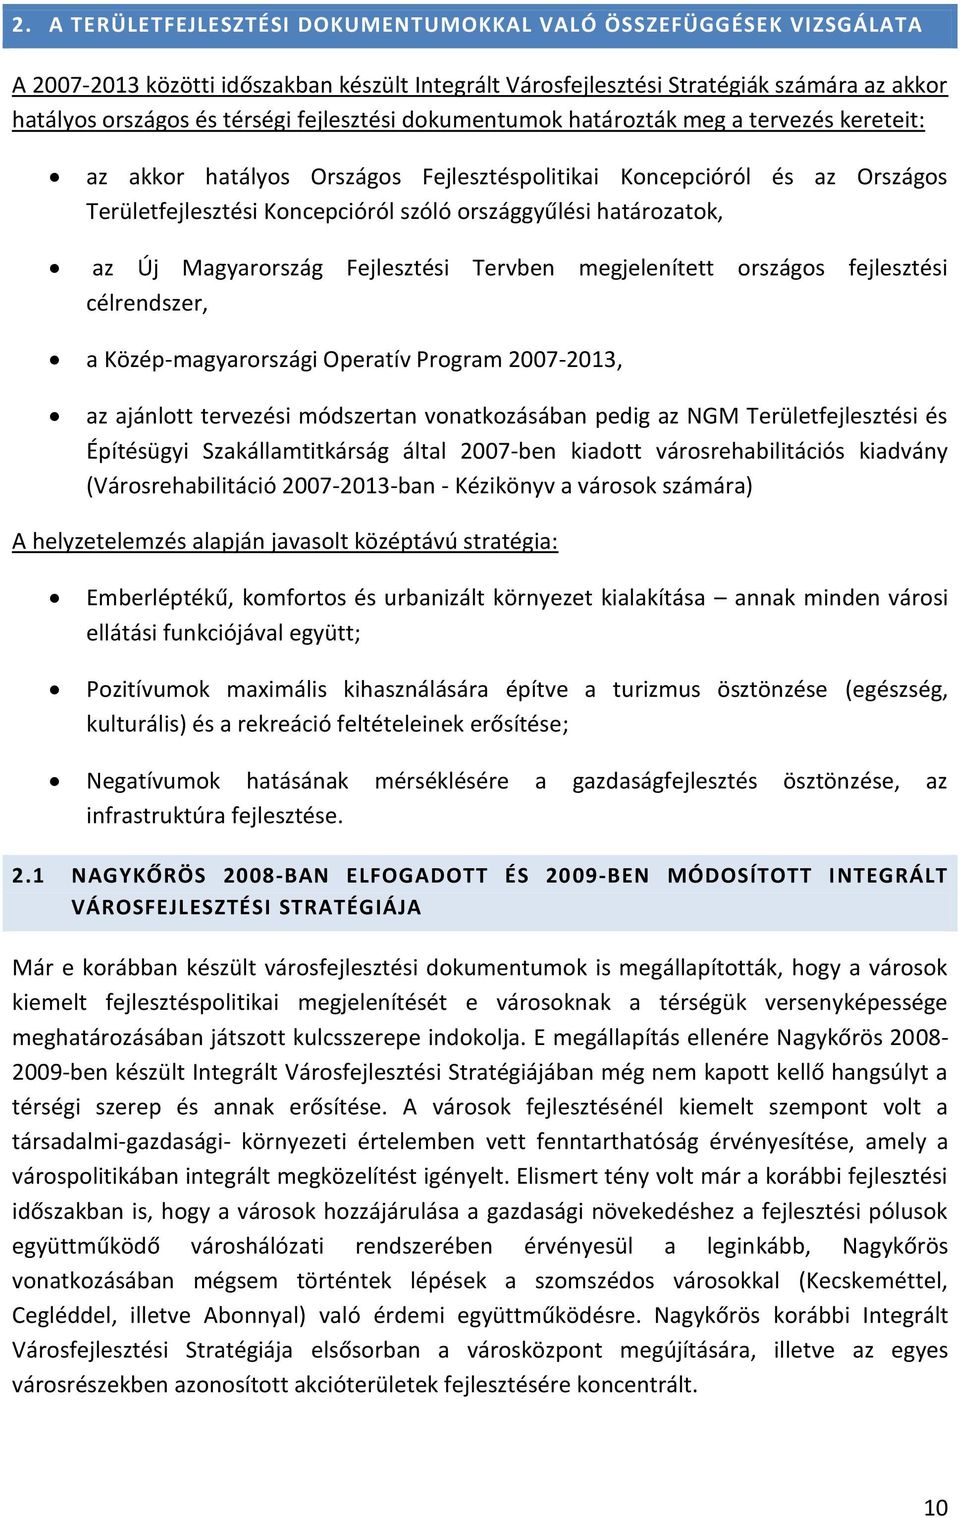 határozatok, az Új Magyarország Fejlesztési Tervben megjelenített országos fejlesztési célrendszer, a Közép-magyarországi Operatív Program 2007-2013, az ajánlott tervezési módszertan vonatkozásában